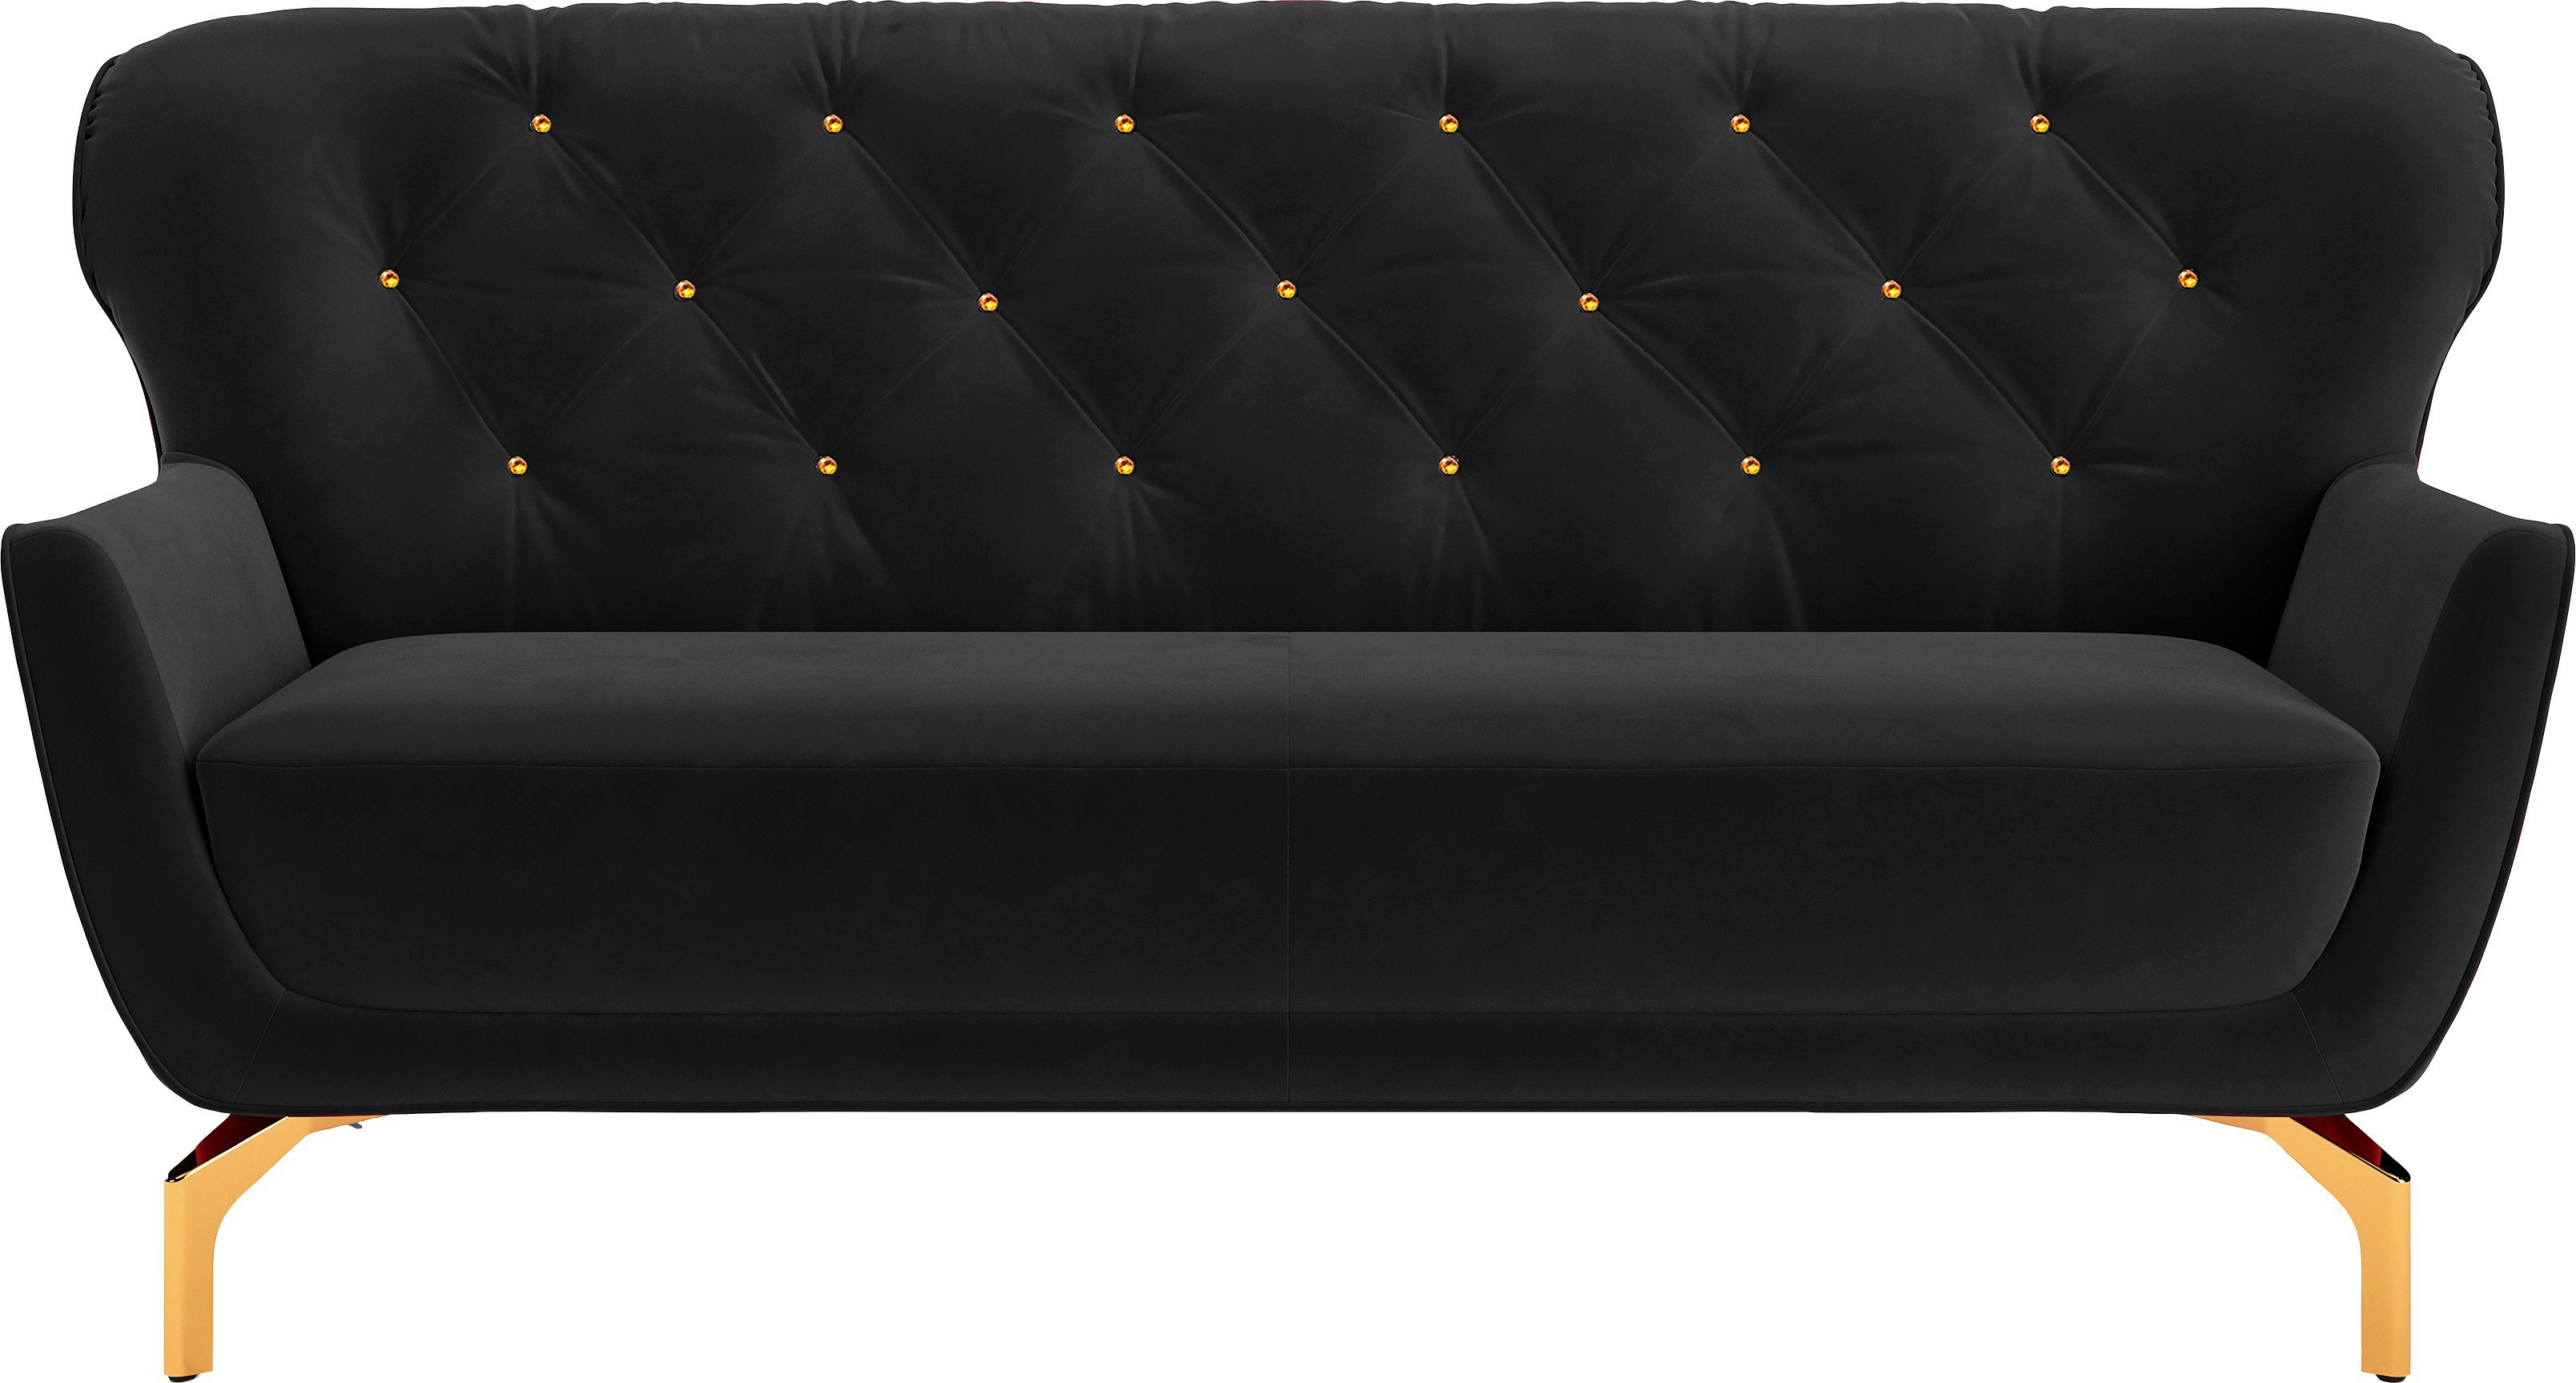 sit&more 3-Sitzer Orient 3 V, inkl. 2 Zierkissen mit Strass-Stein, goldfarbene Metallfüße